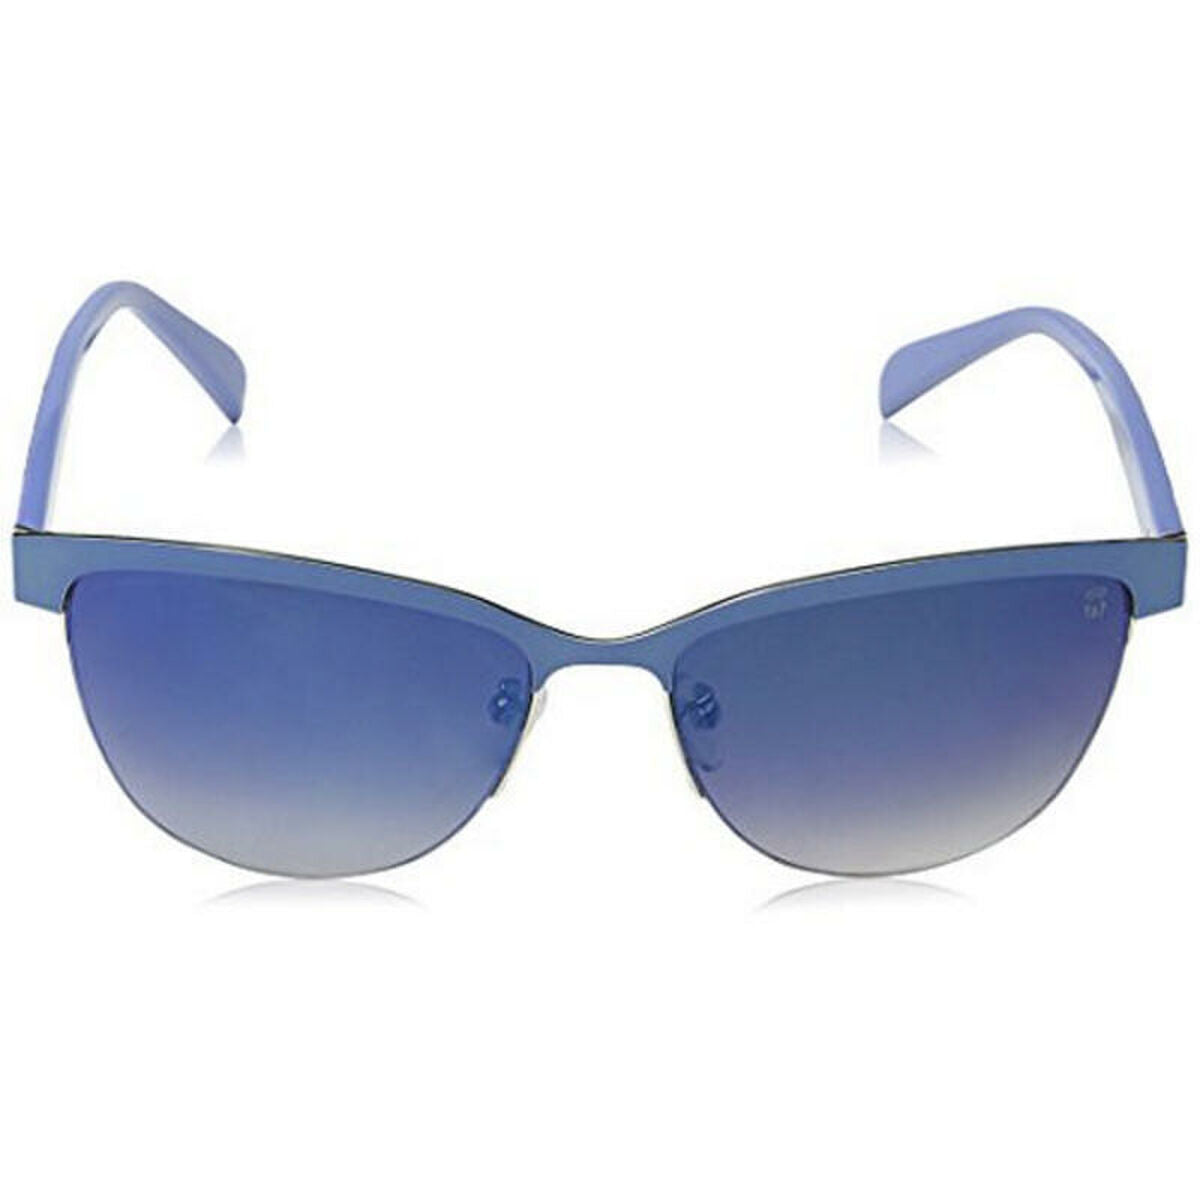 Kaufe Damensonnenbrille Tous Sto3 bei AWK Flagship um € 63.00